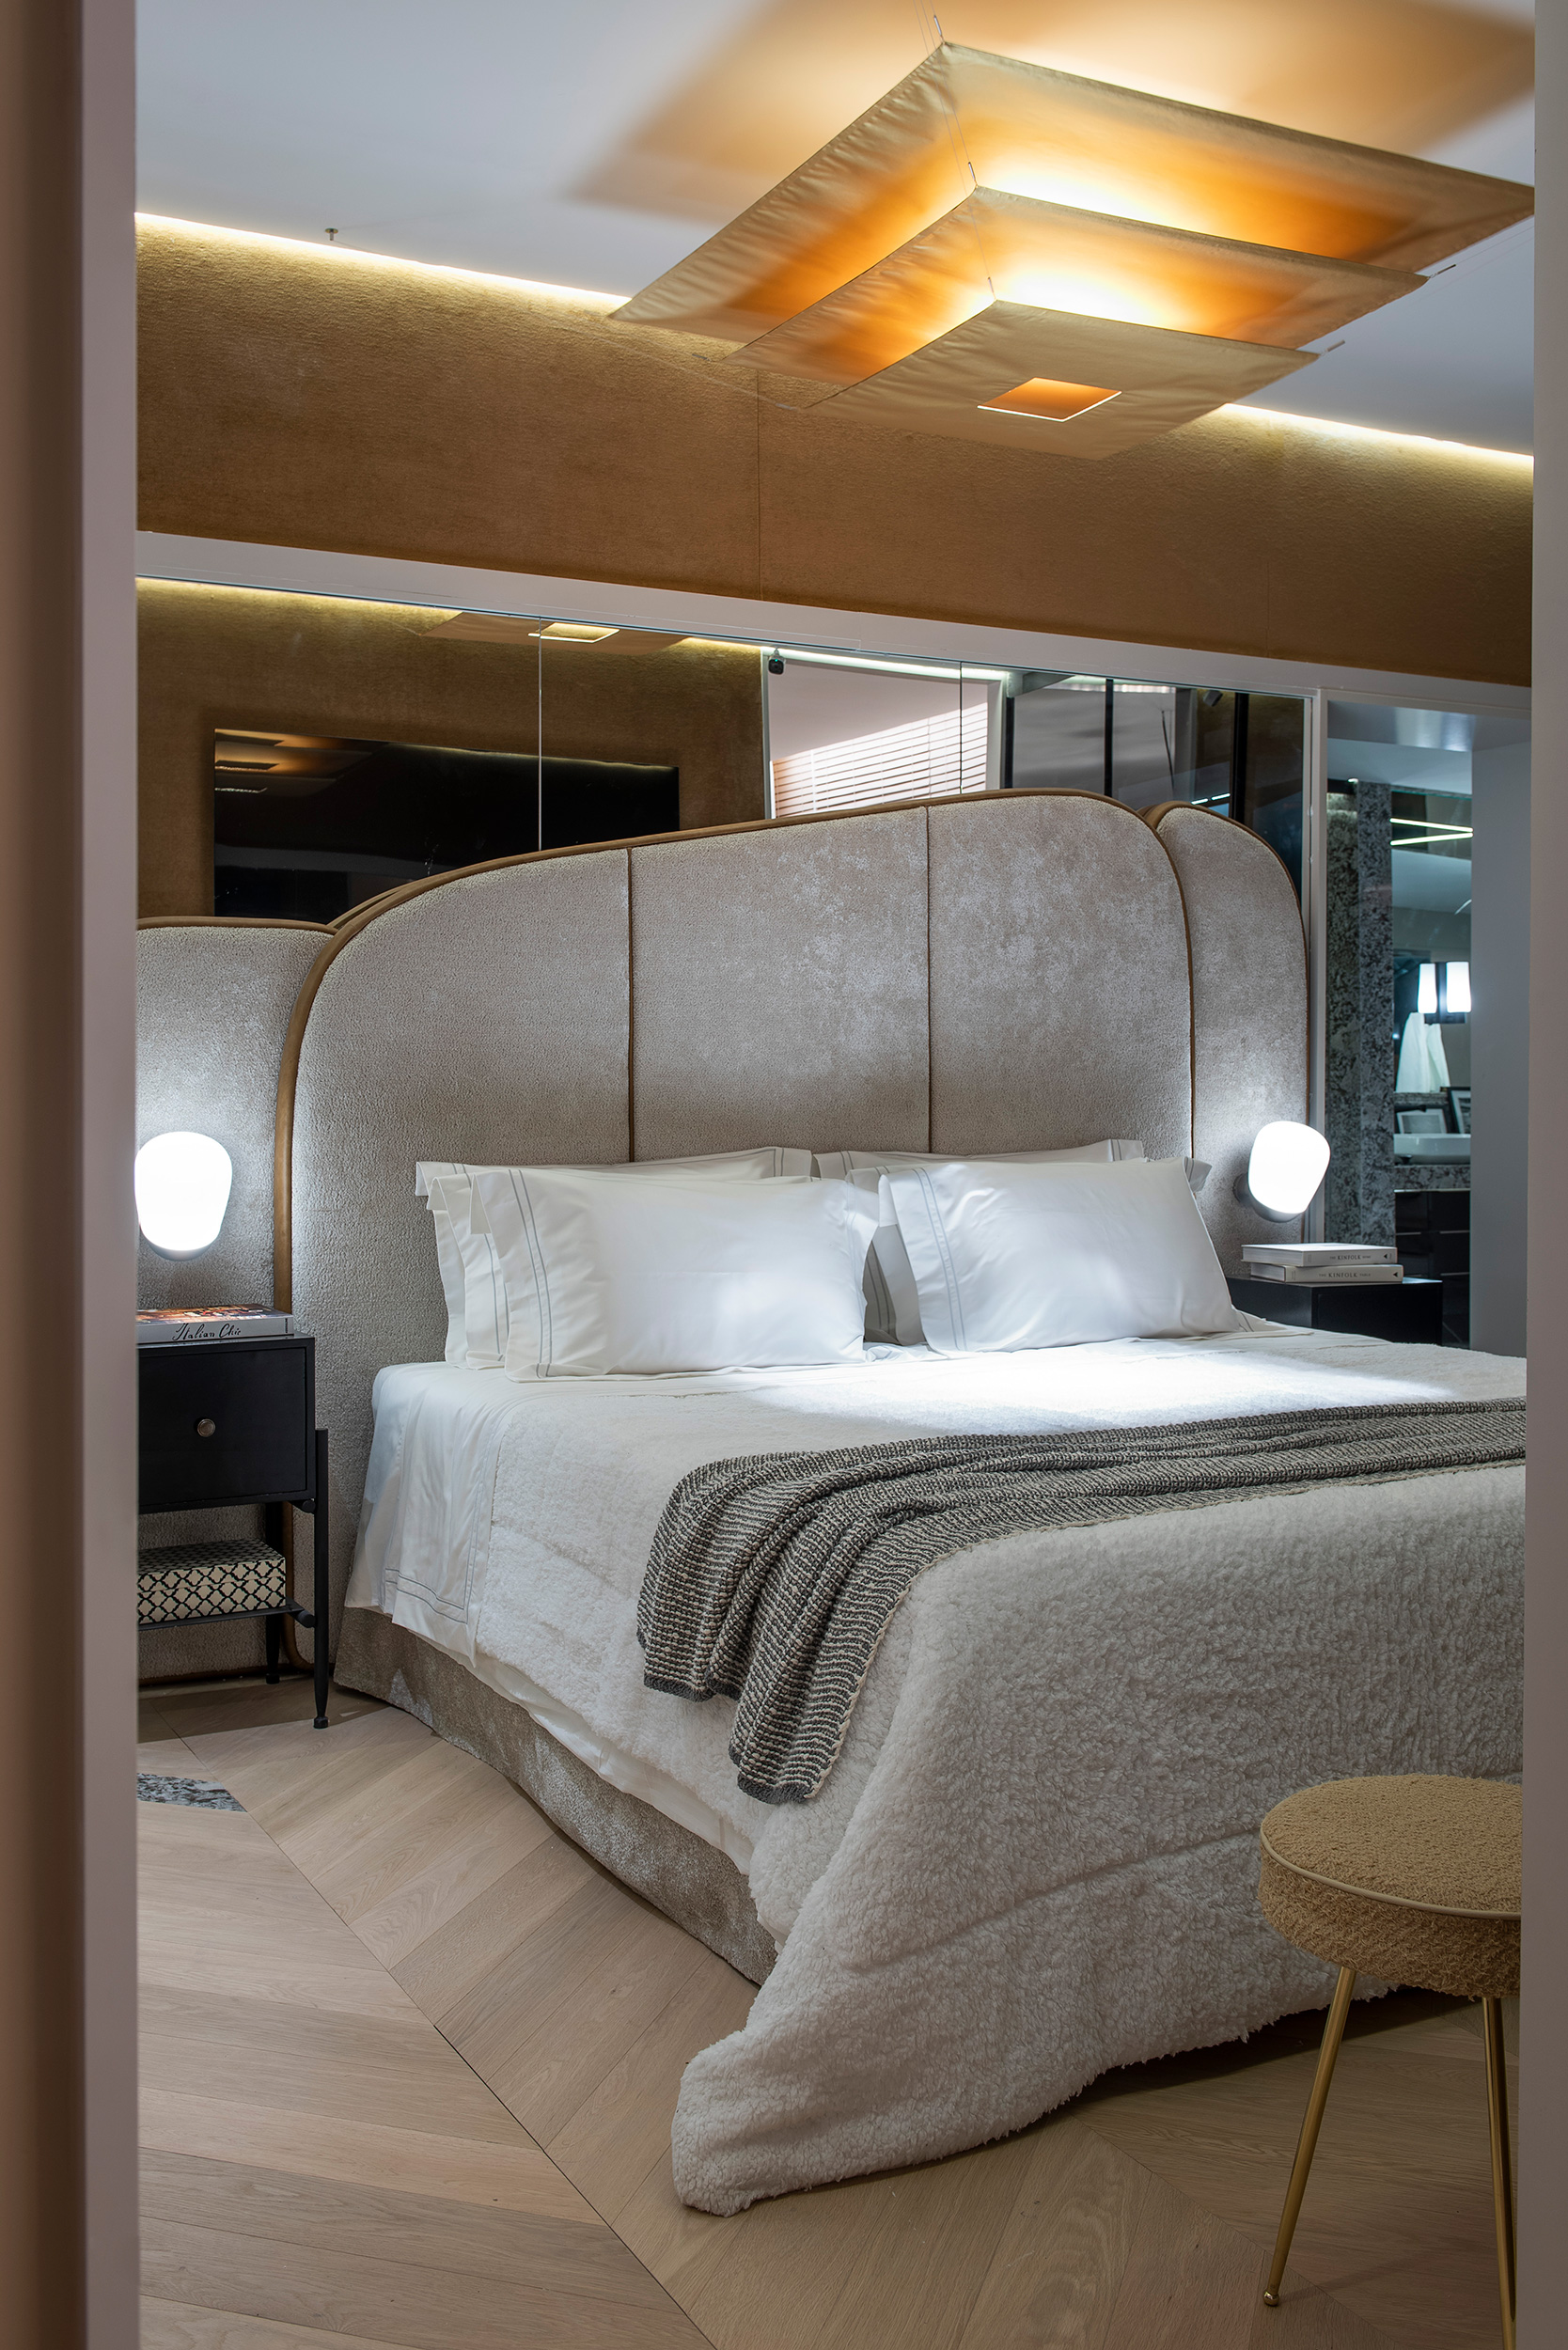 murilo lomas arquitetura living art casacor sp 2022 decoracao design mostras cama quarto piso cadeira